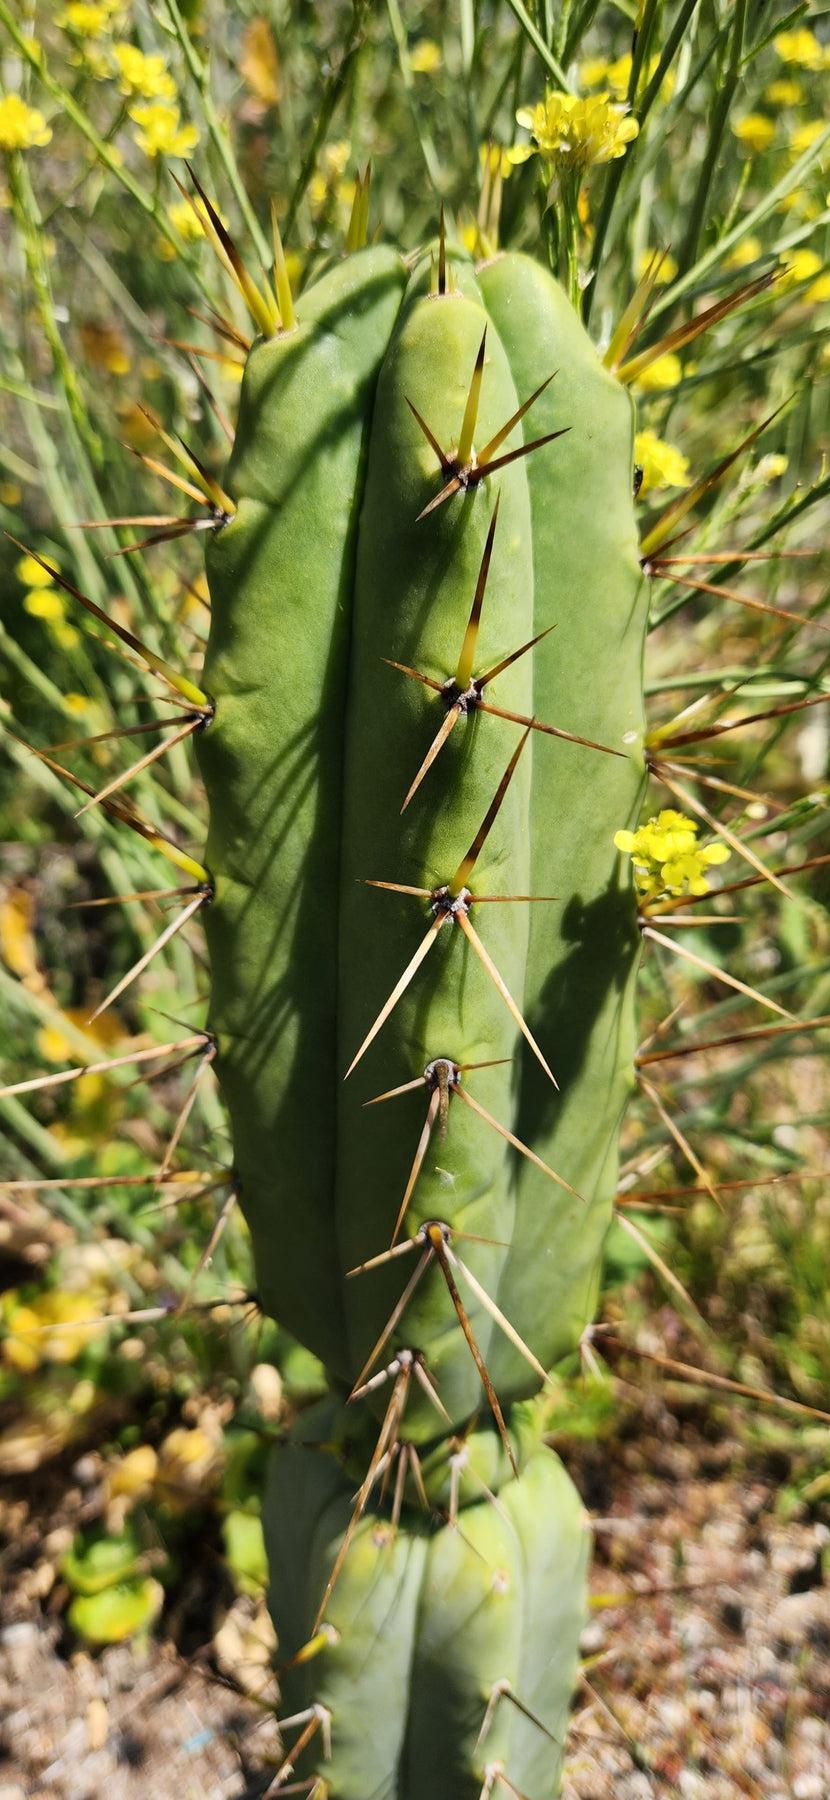 #EC19 EXACT Trichocereus Bridgesii "Eileen" Cactus Cutting 7-8"-Cactus - Large - Exact-The Succulent Source